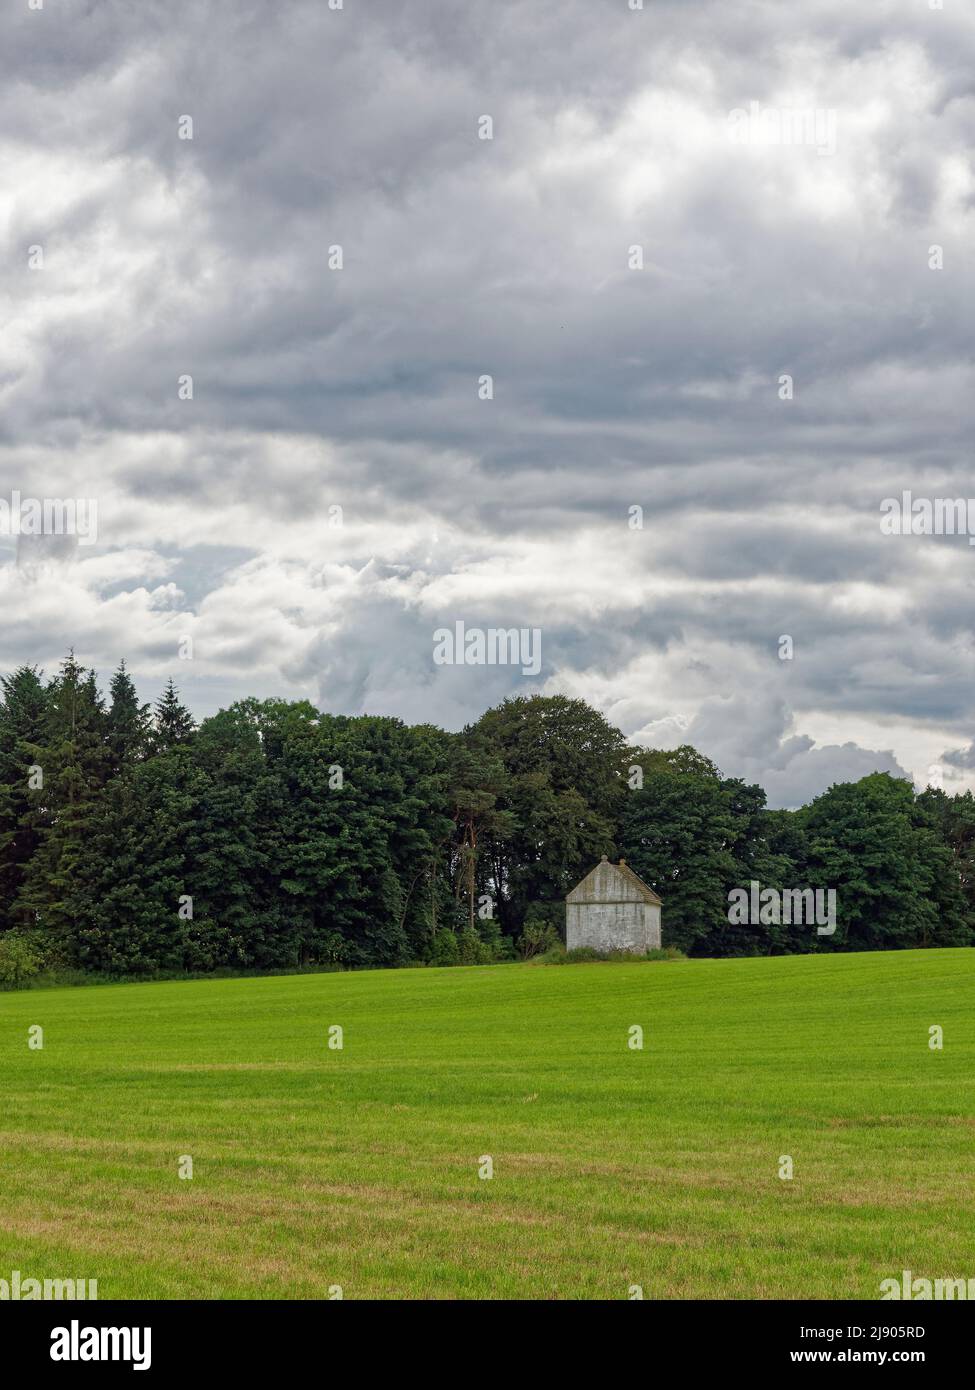 Un vecchio Doocot o Dovecote ben conservato situato in un campo di grano appena seminato con un bosco misto dietro e nuvole scure sopra. Foto Stock